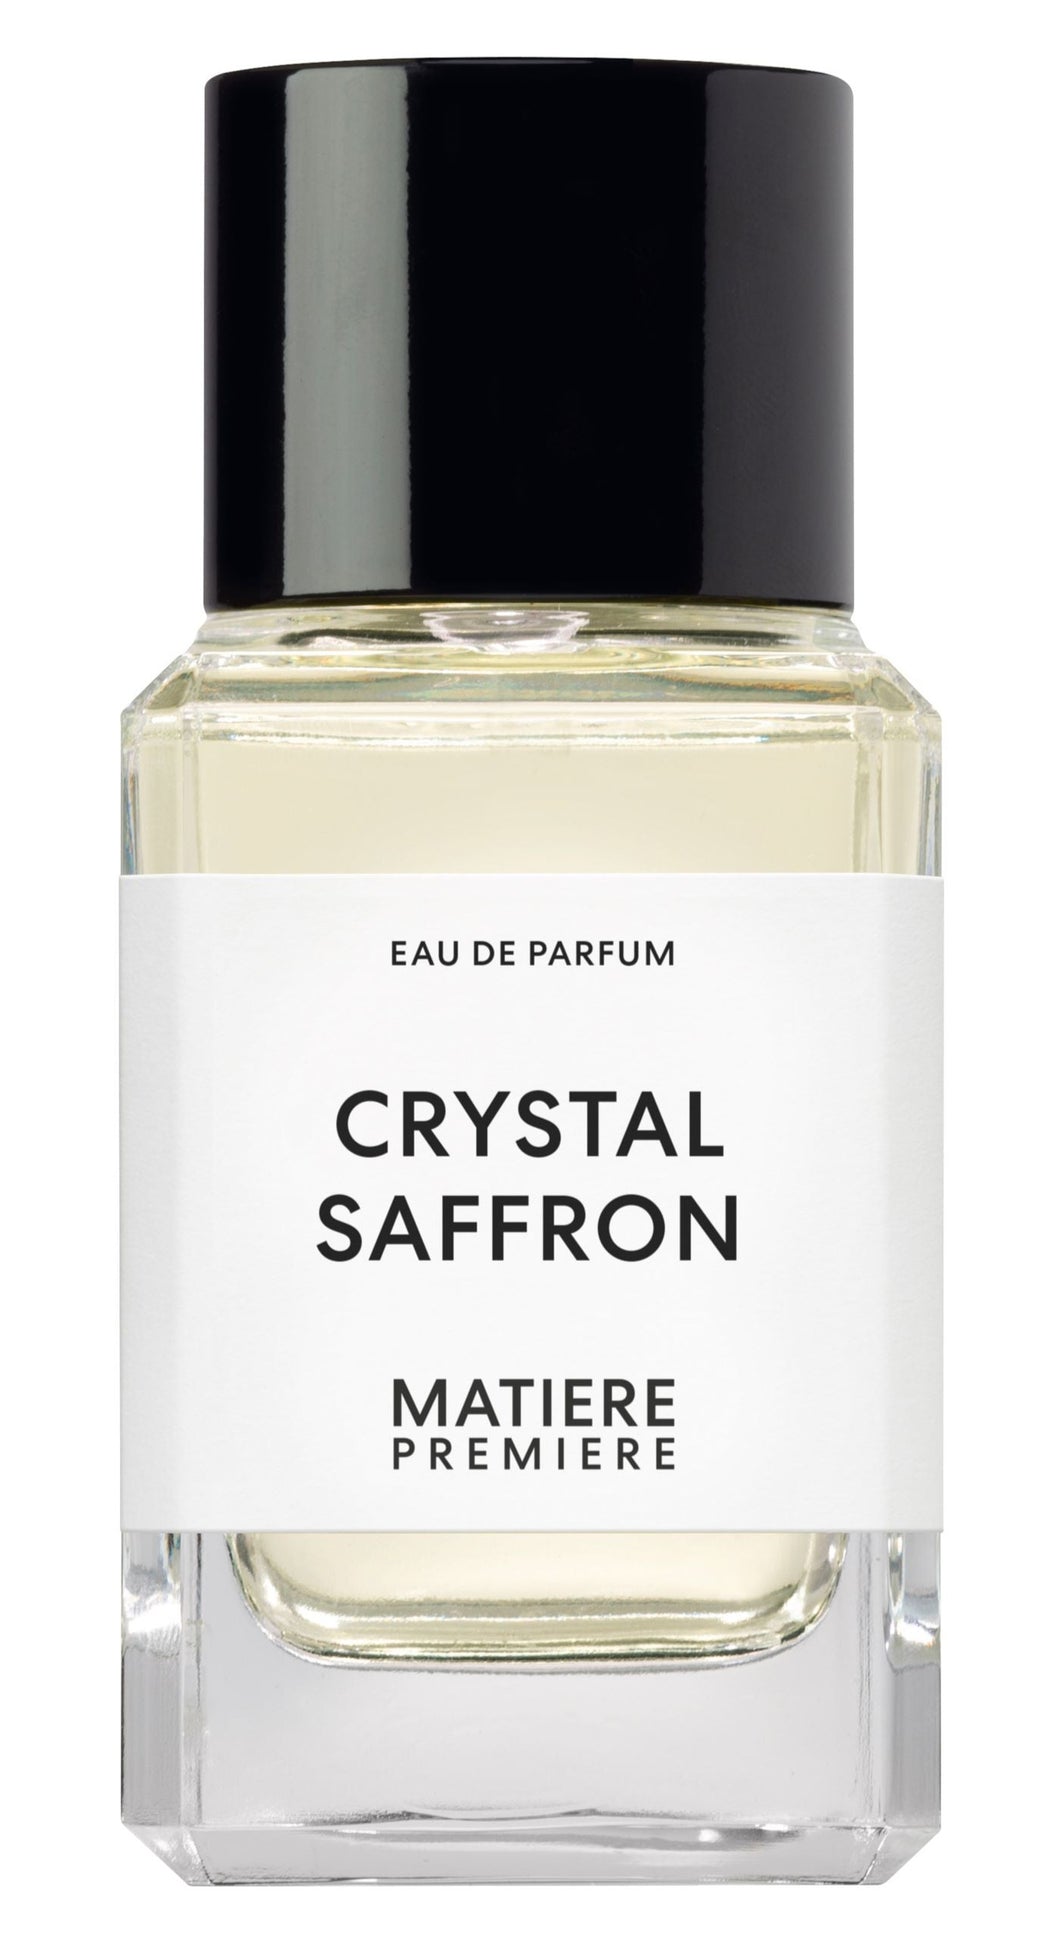 Matiere Premiere - Saffron - 100ml Eau de Parfum